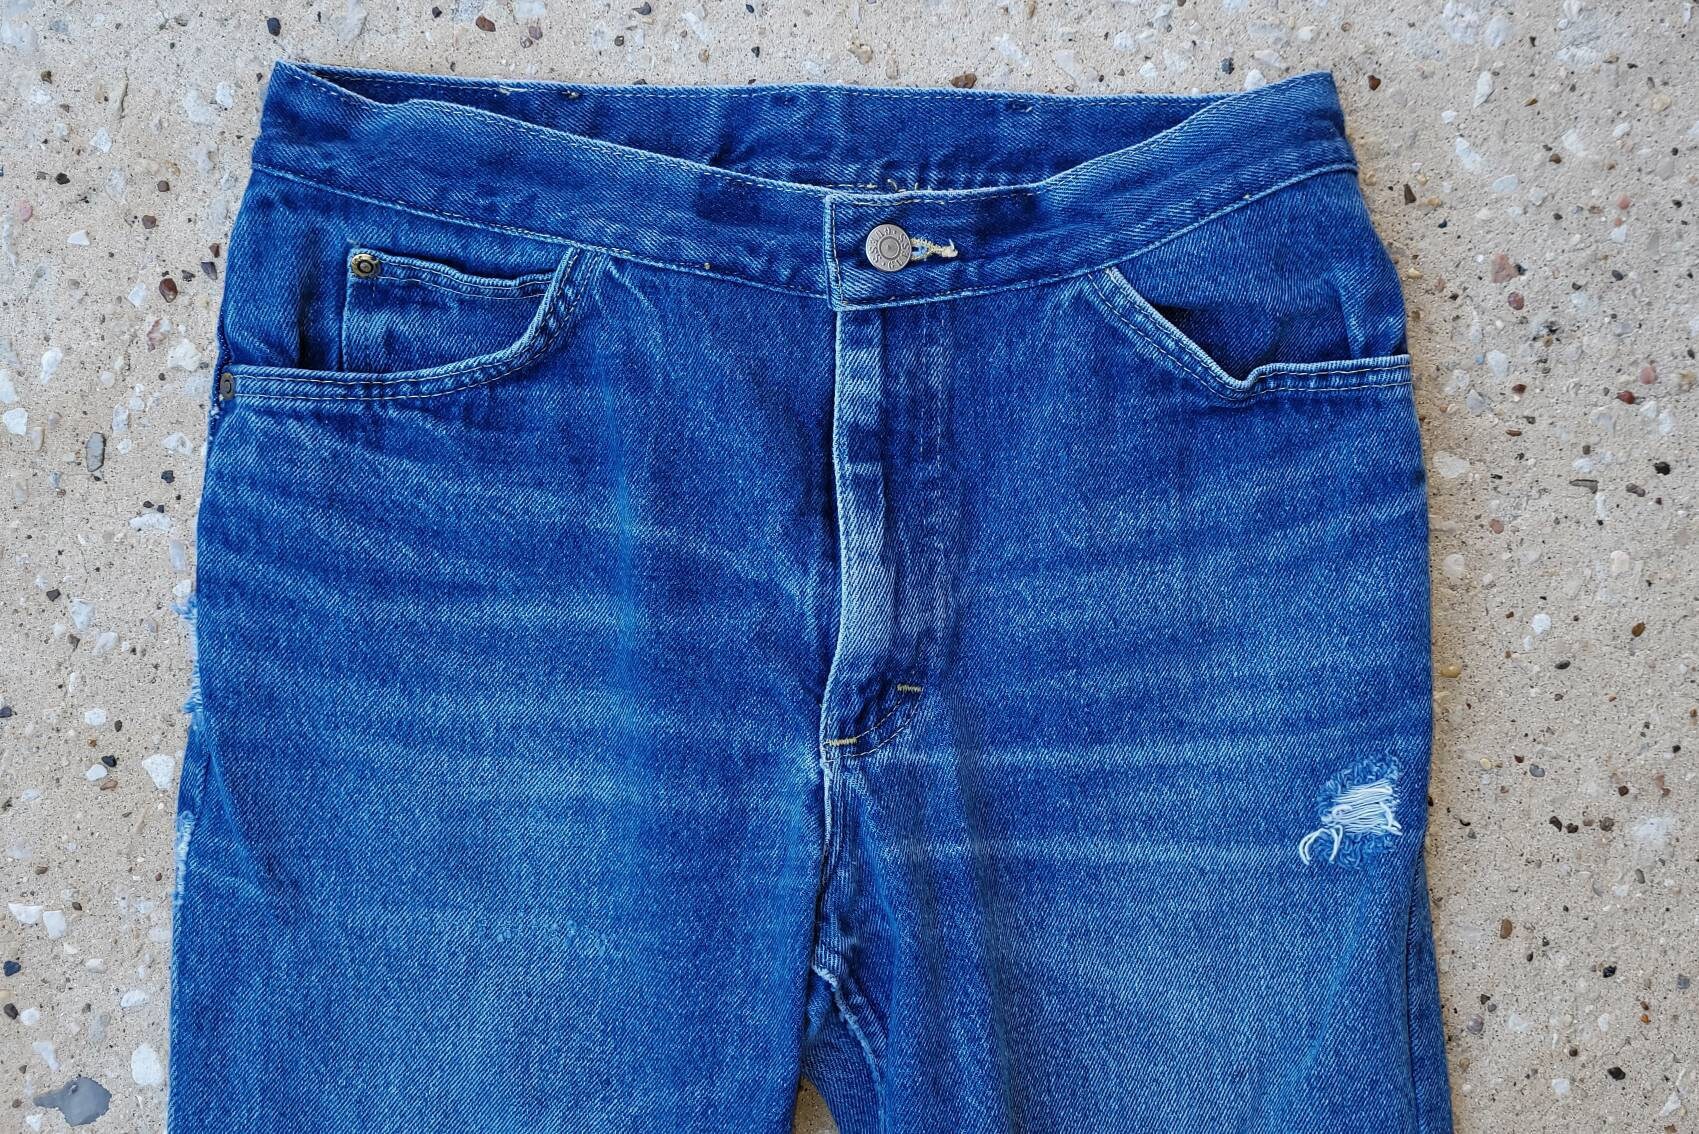 Vintage Lee Jean Distressed Jeans Boyfriend Made in Usa Größe 30 Taille von LucysVintage72